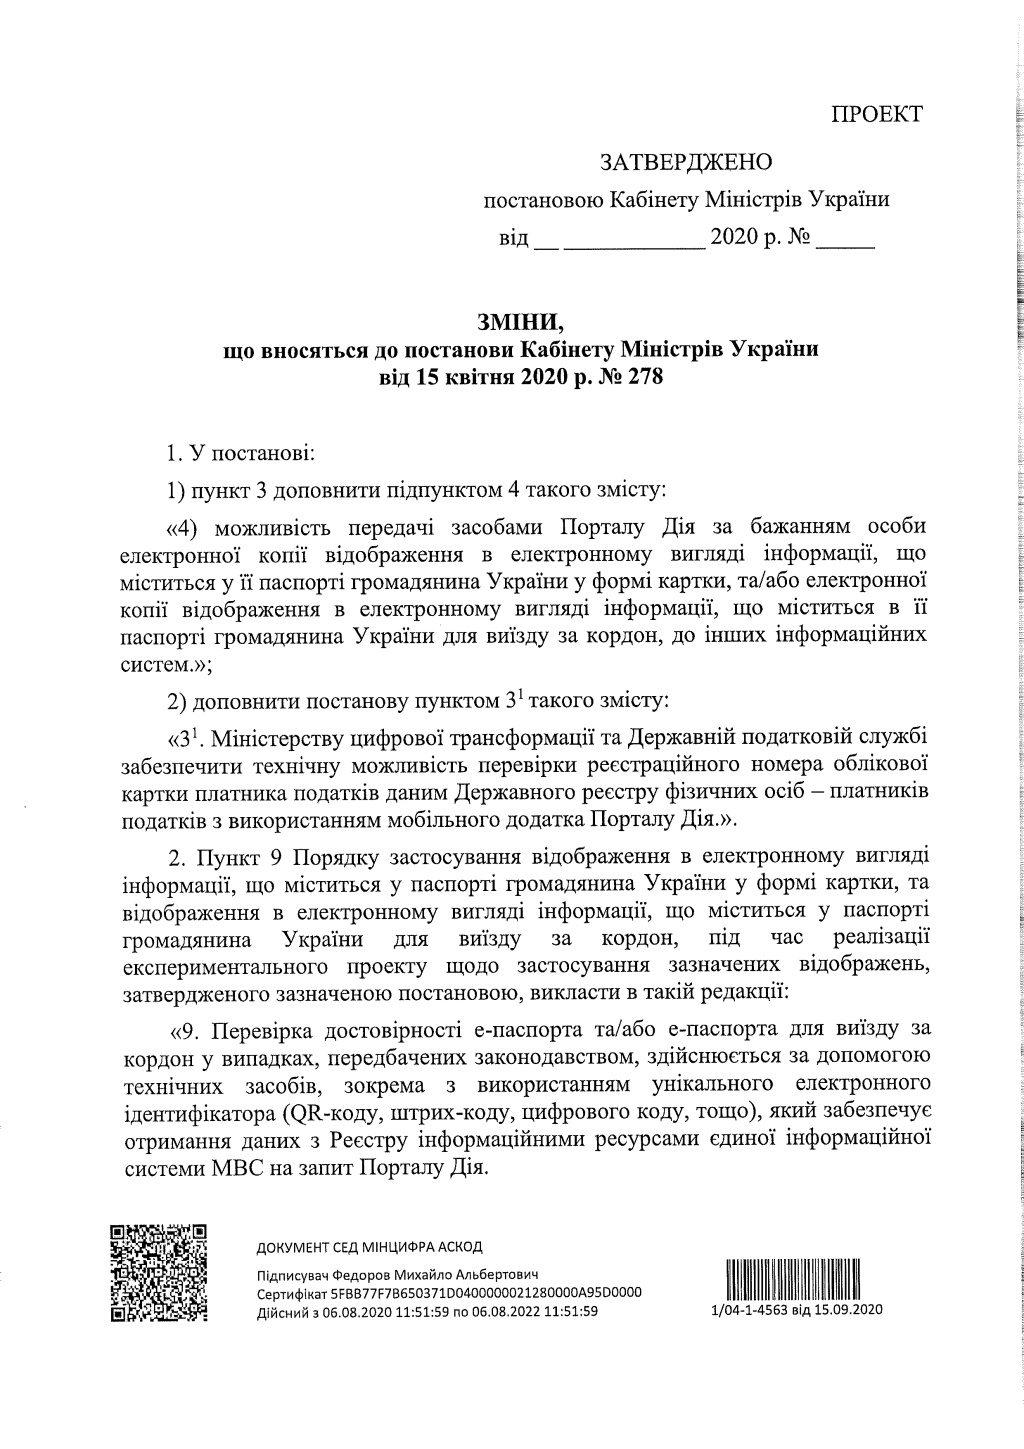 Кабинет министров Украины анонсировал расширение возможностей е-паспорта через приложение ”Дія”  - фото 3